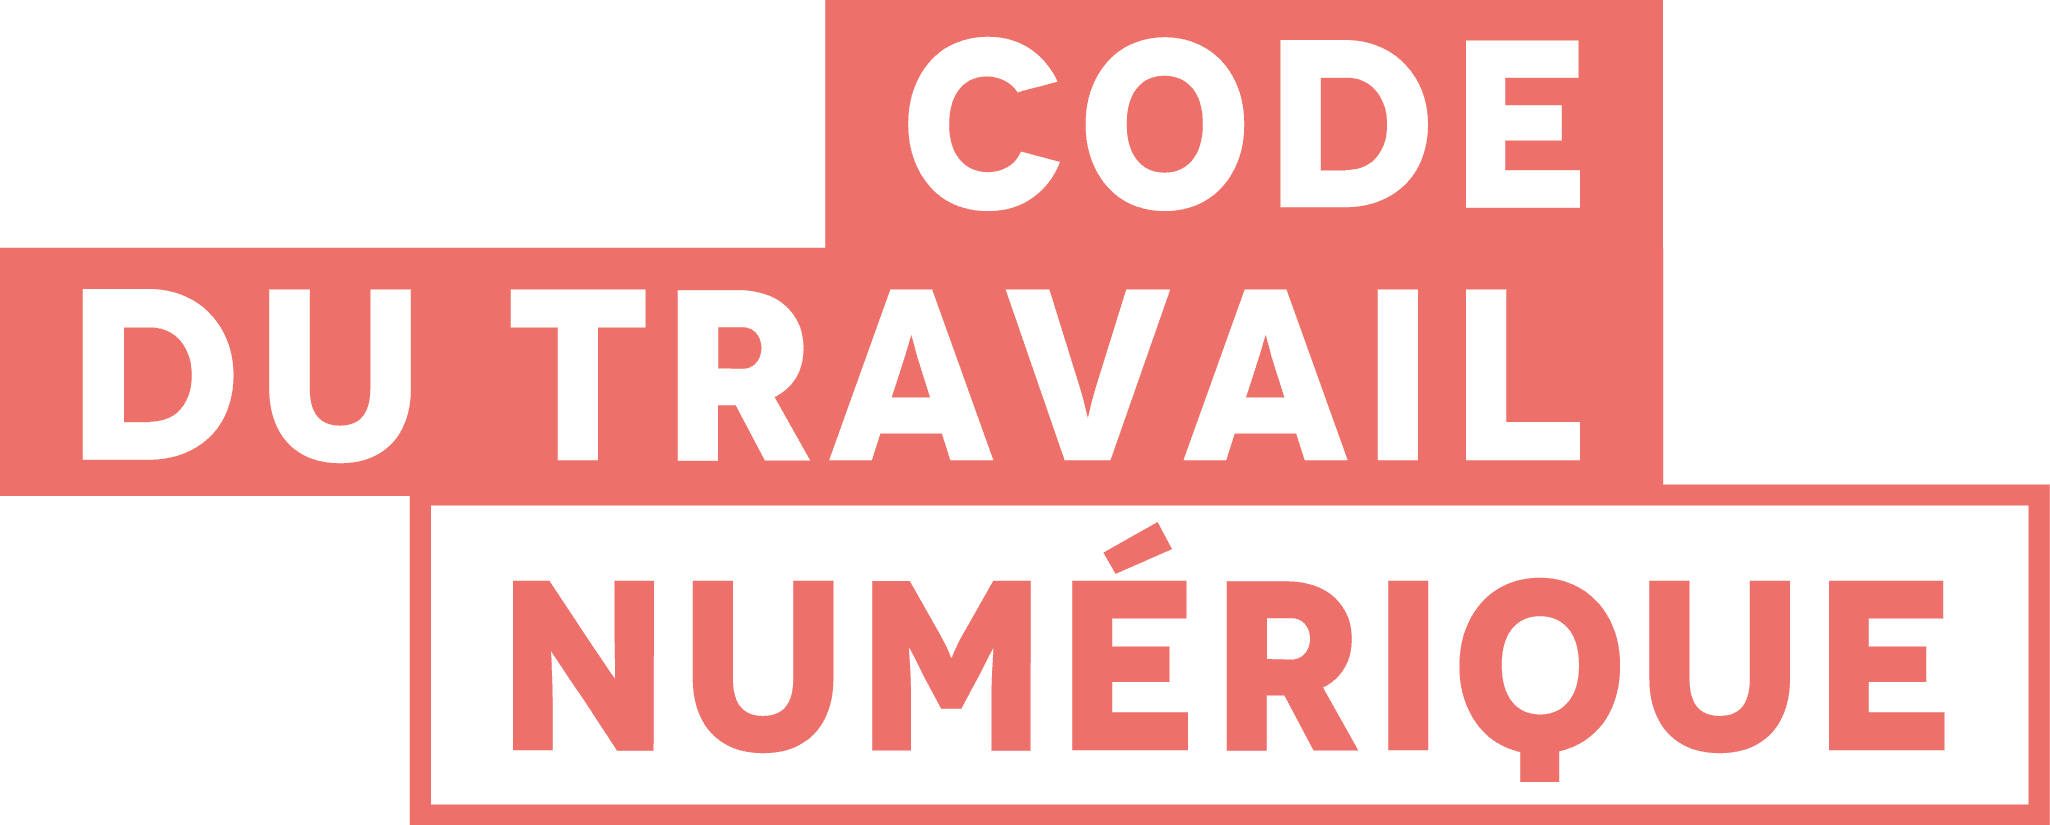 logo code du travail numérique gouvernement